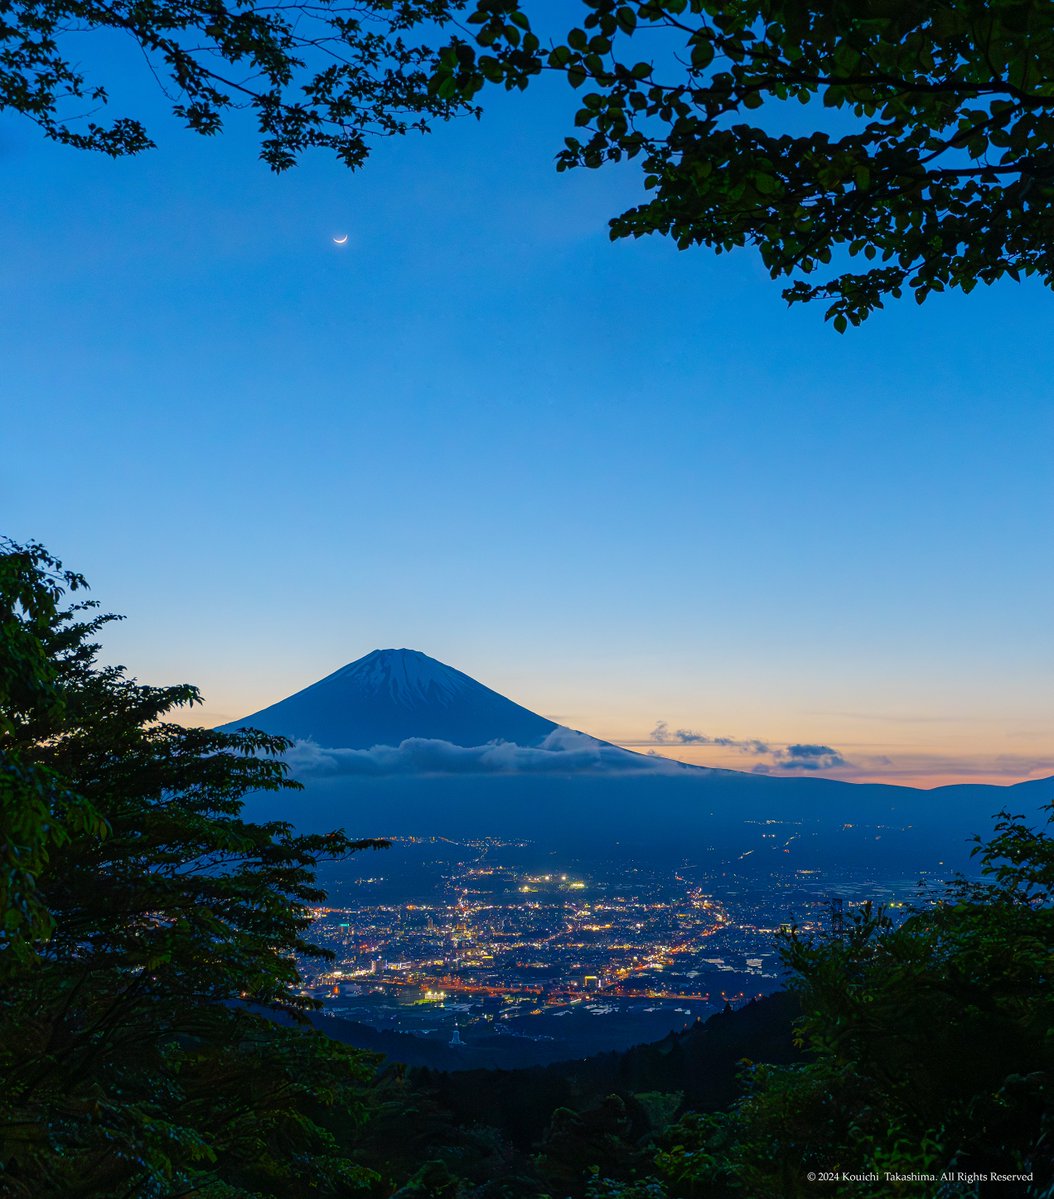 夕焼けの富士山と三日月✨
#NaturePhotography  #自然